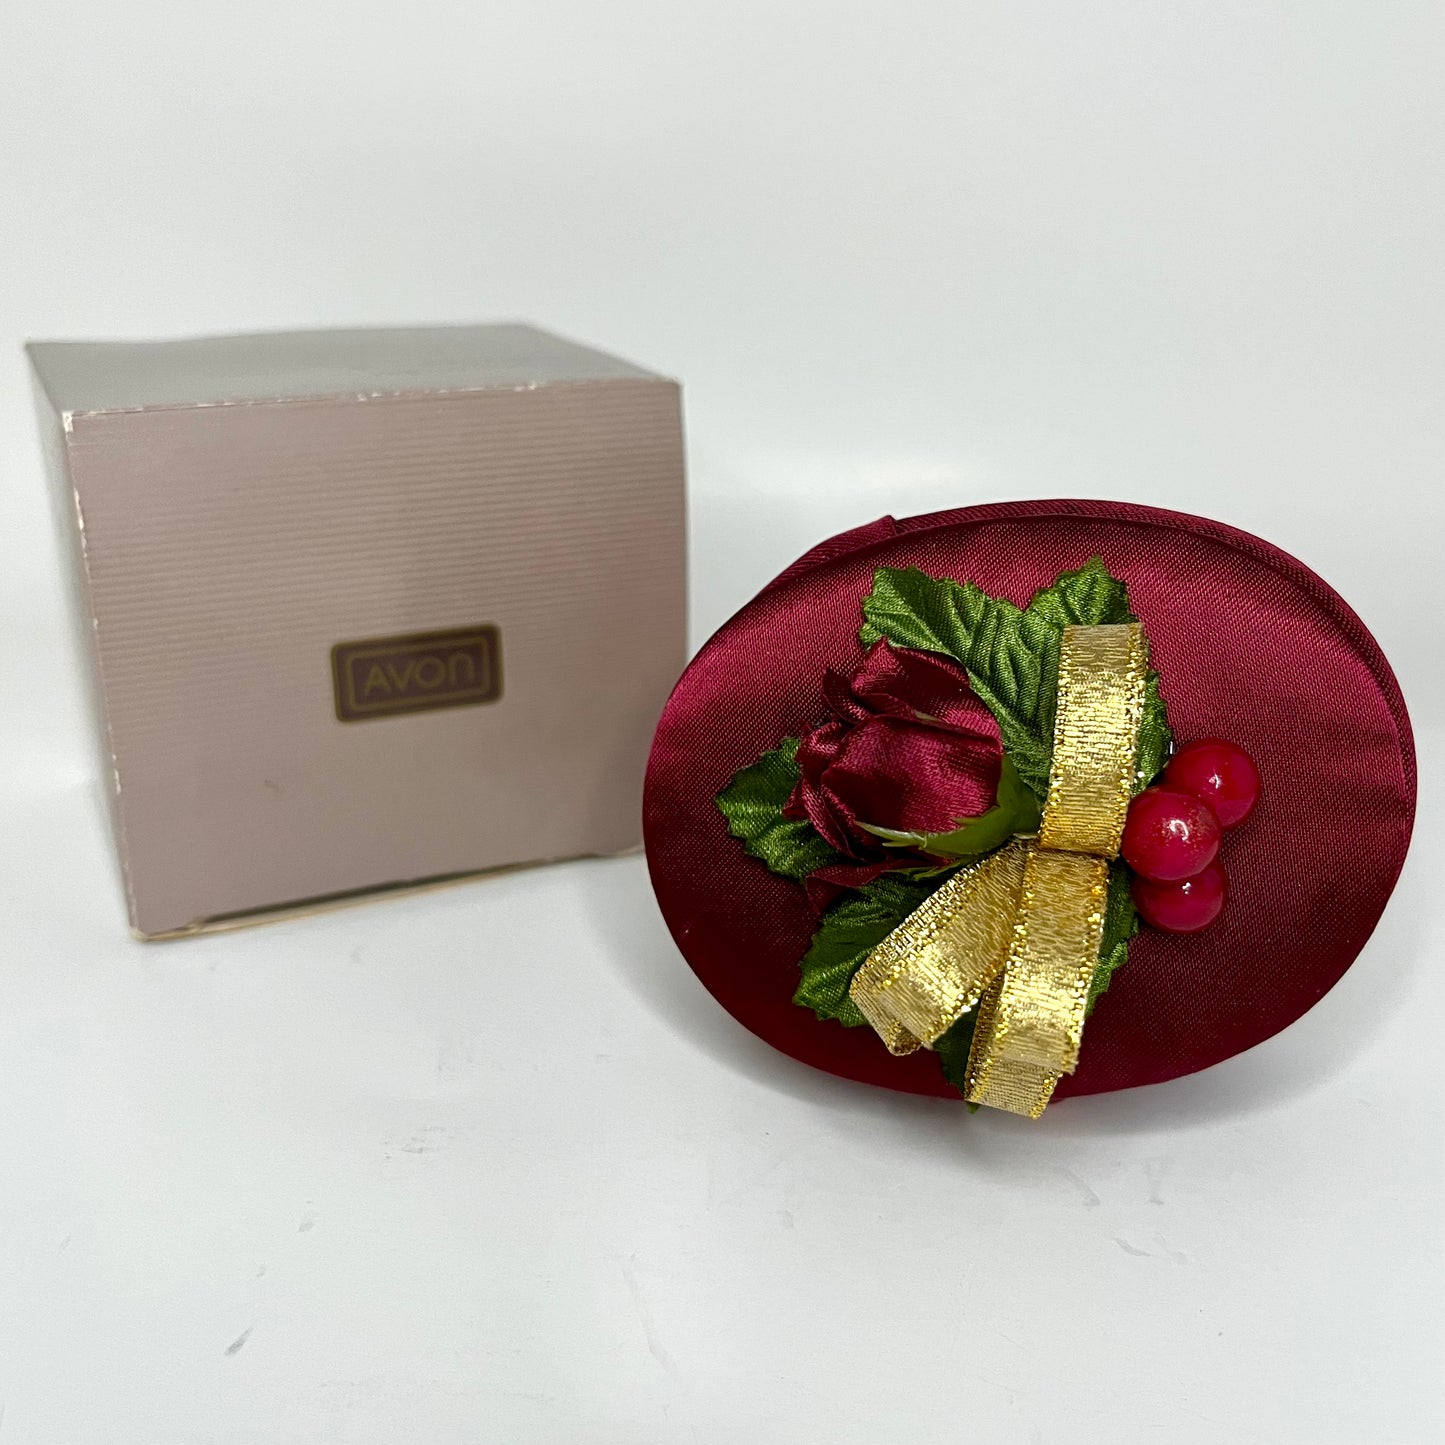 1991 Avon Precious Trinket Jewelry Box